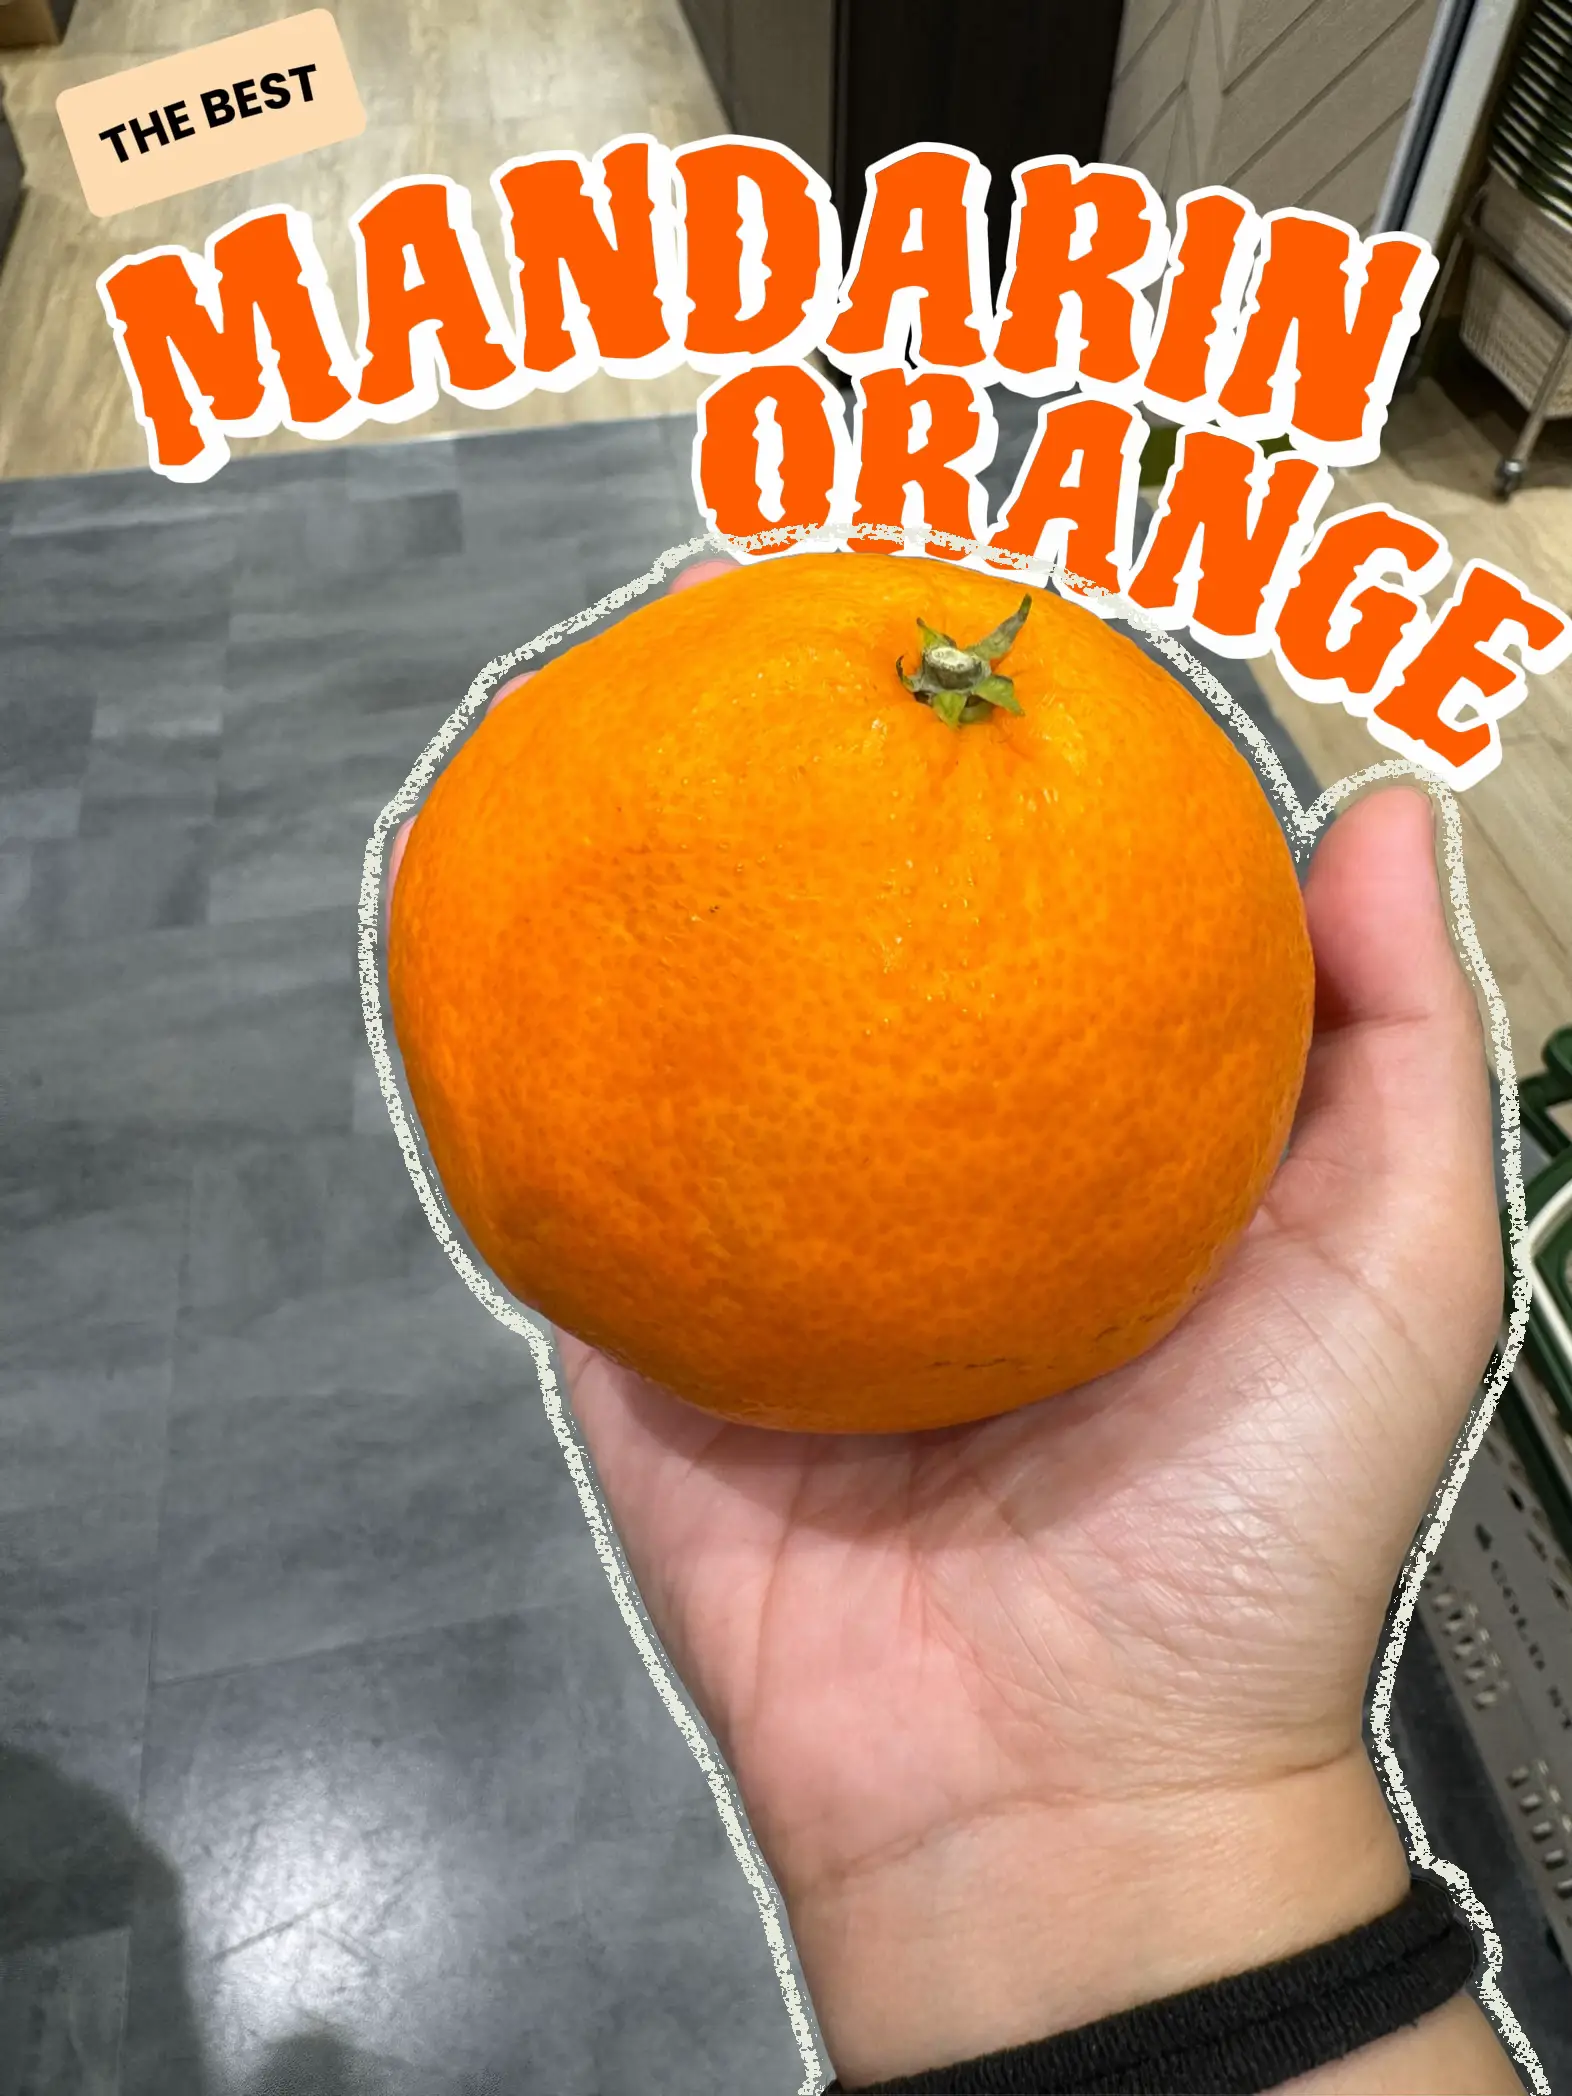 Lovely Team Tangerine Outfit Love Mandarin Oranges T-Shirt